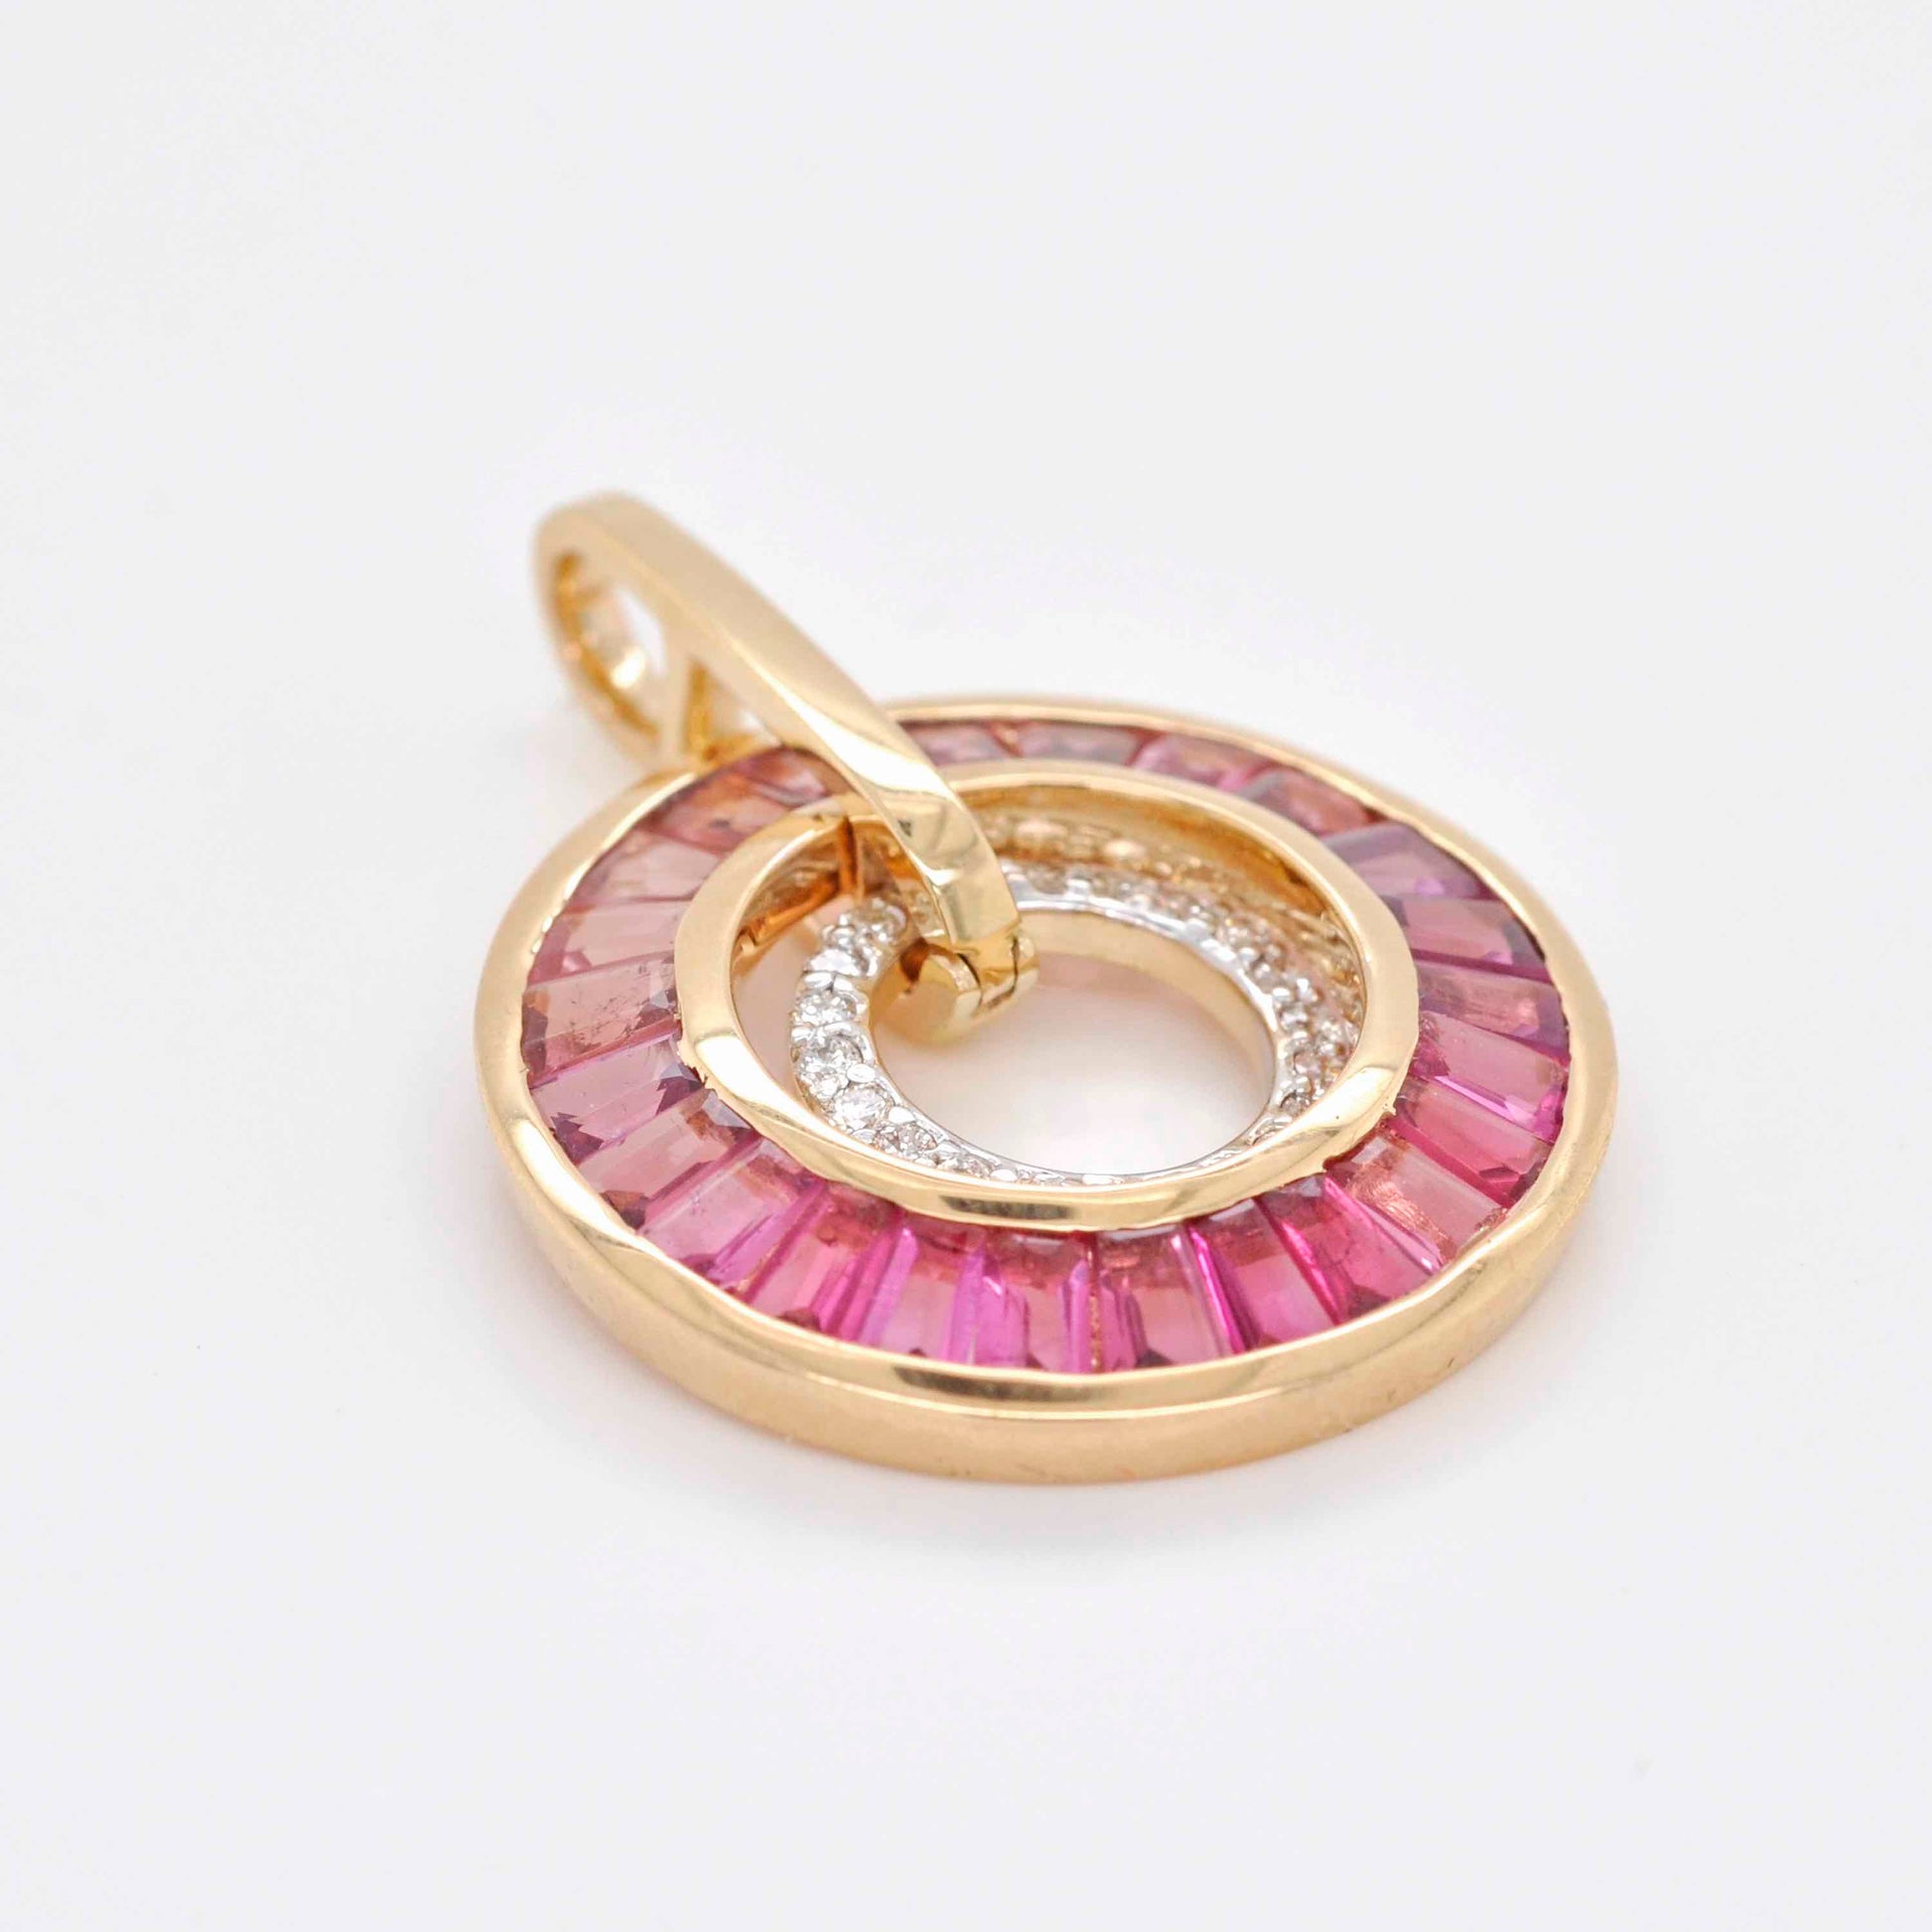 pink tourmaline pendant yellow gold